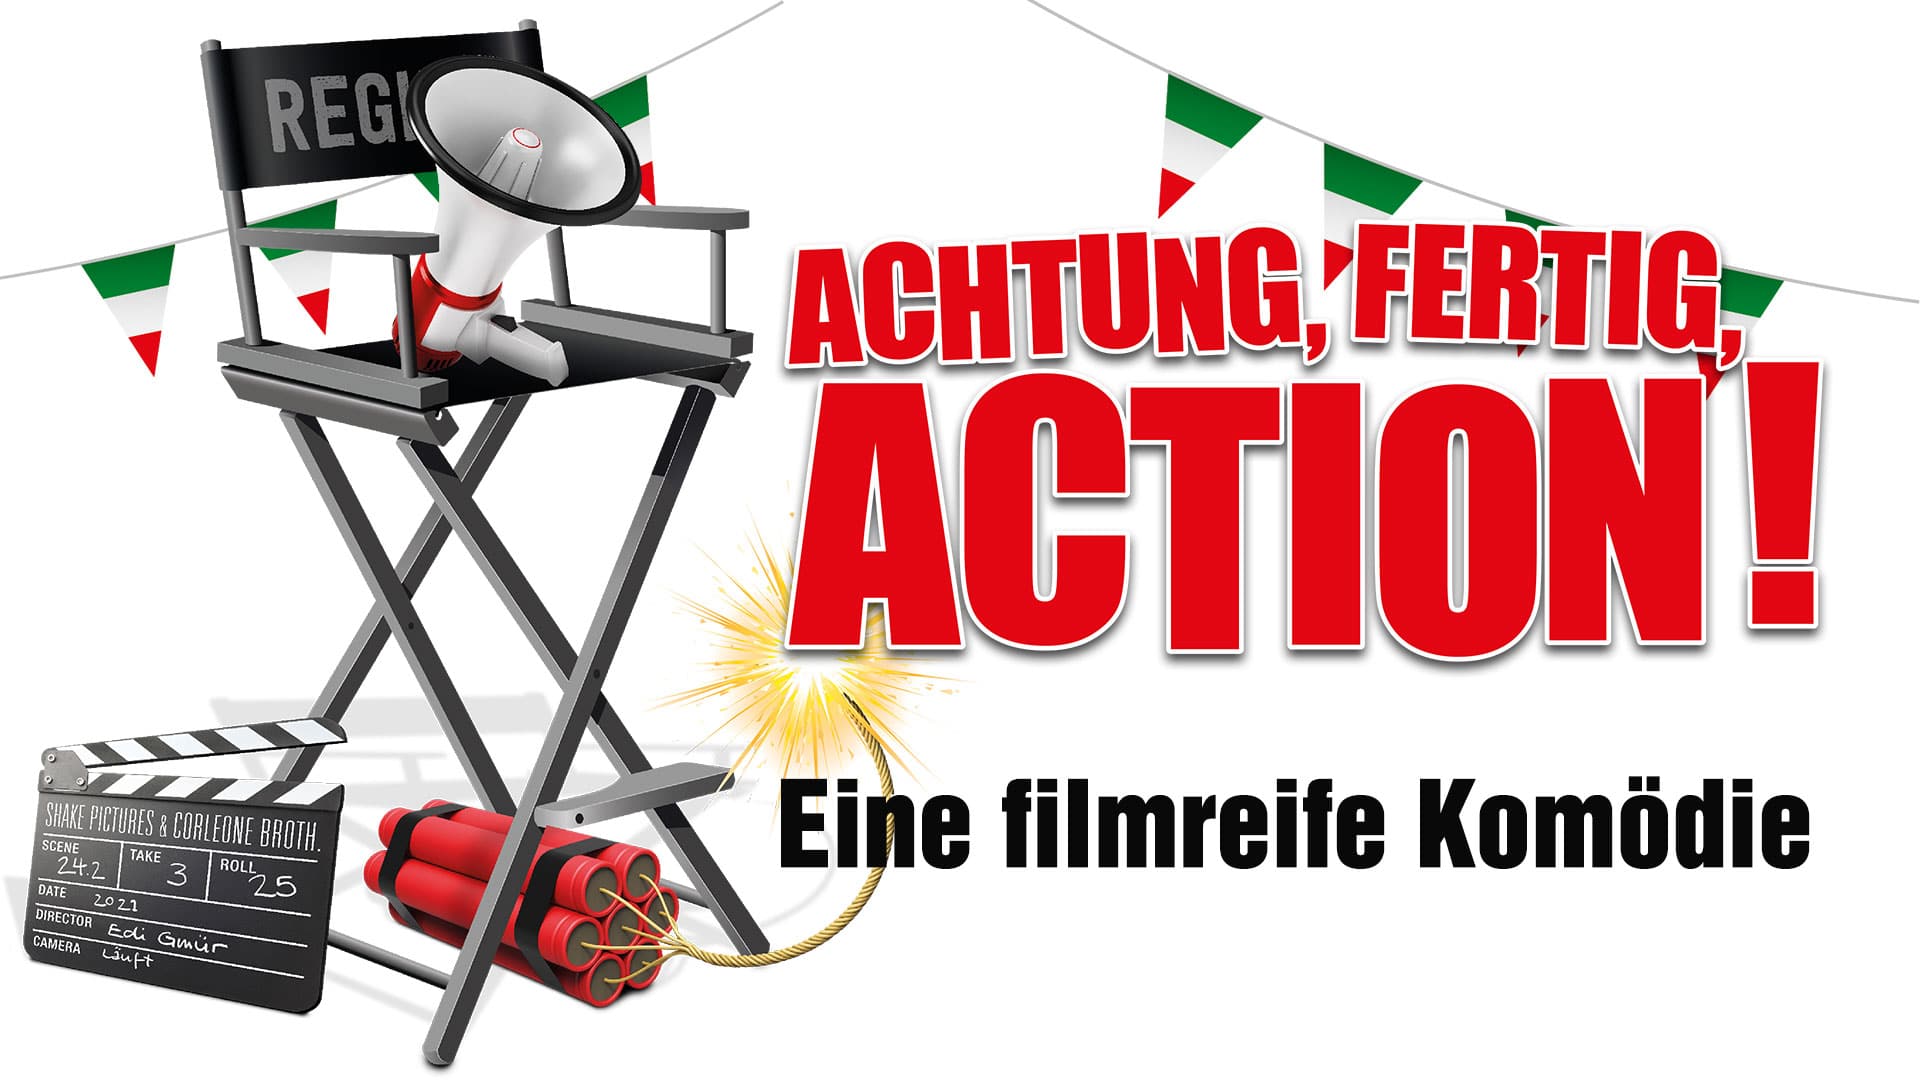 Achtung, Fertig, Action!